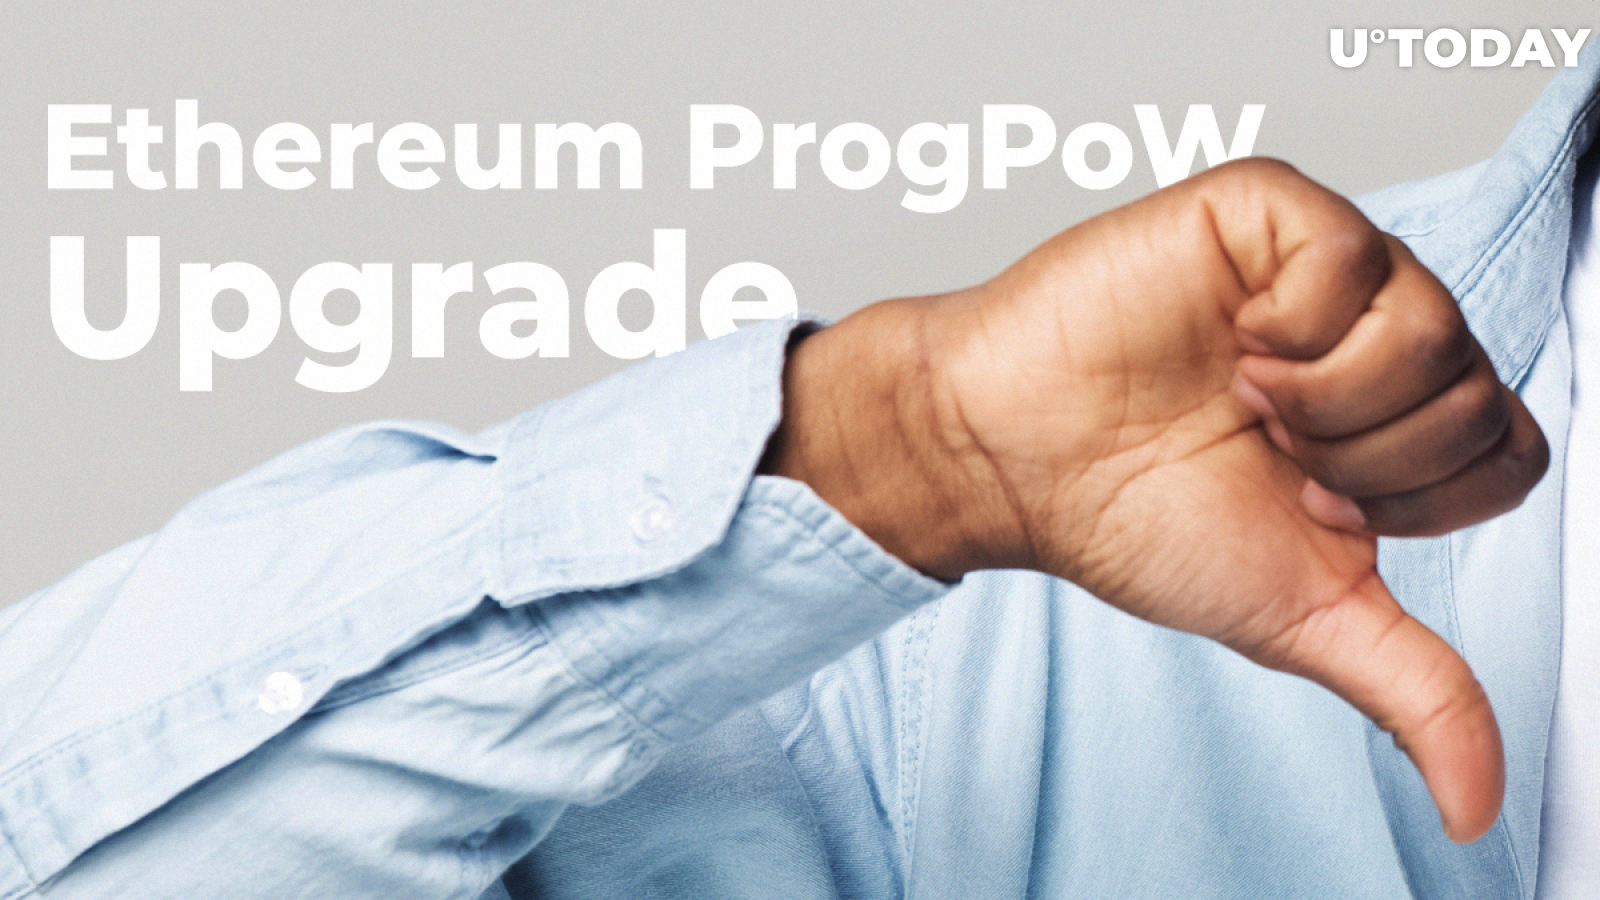 Ethereum (ETH) ProgPoW Upgrade Criticized by Community